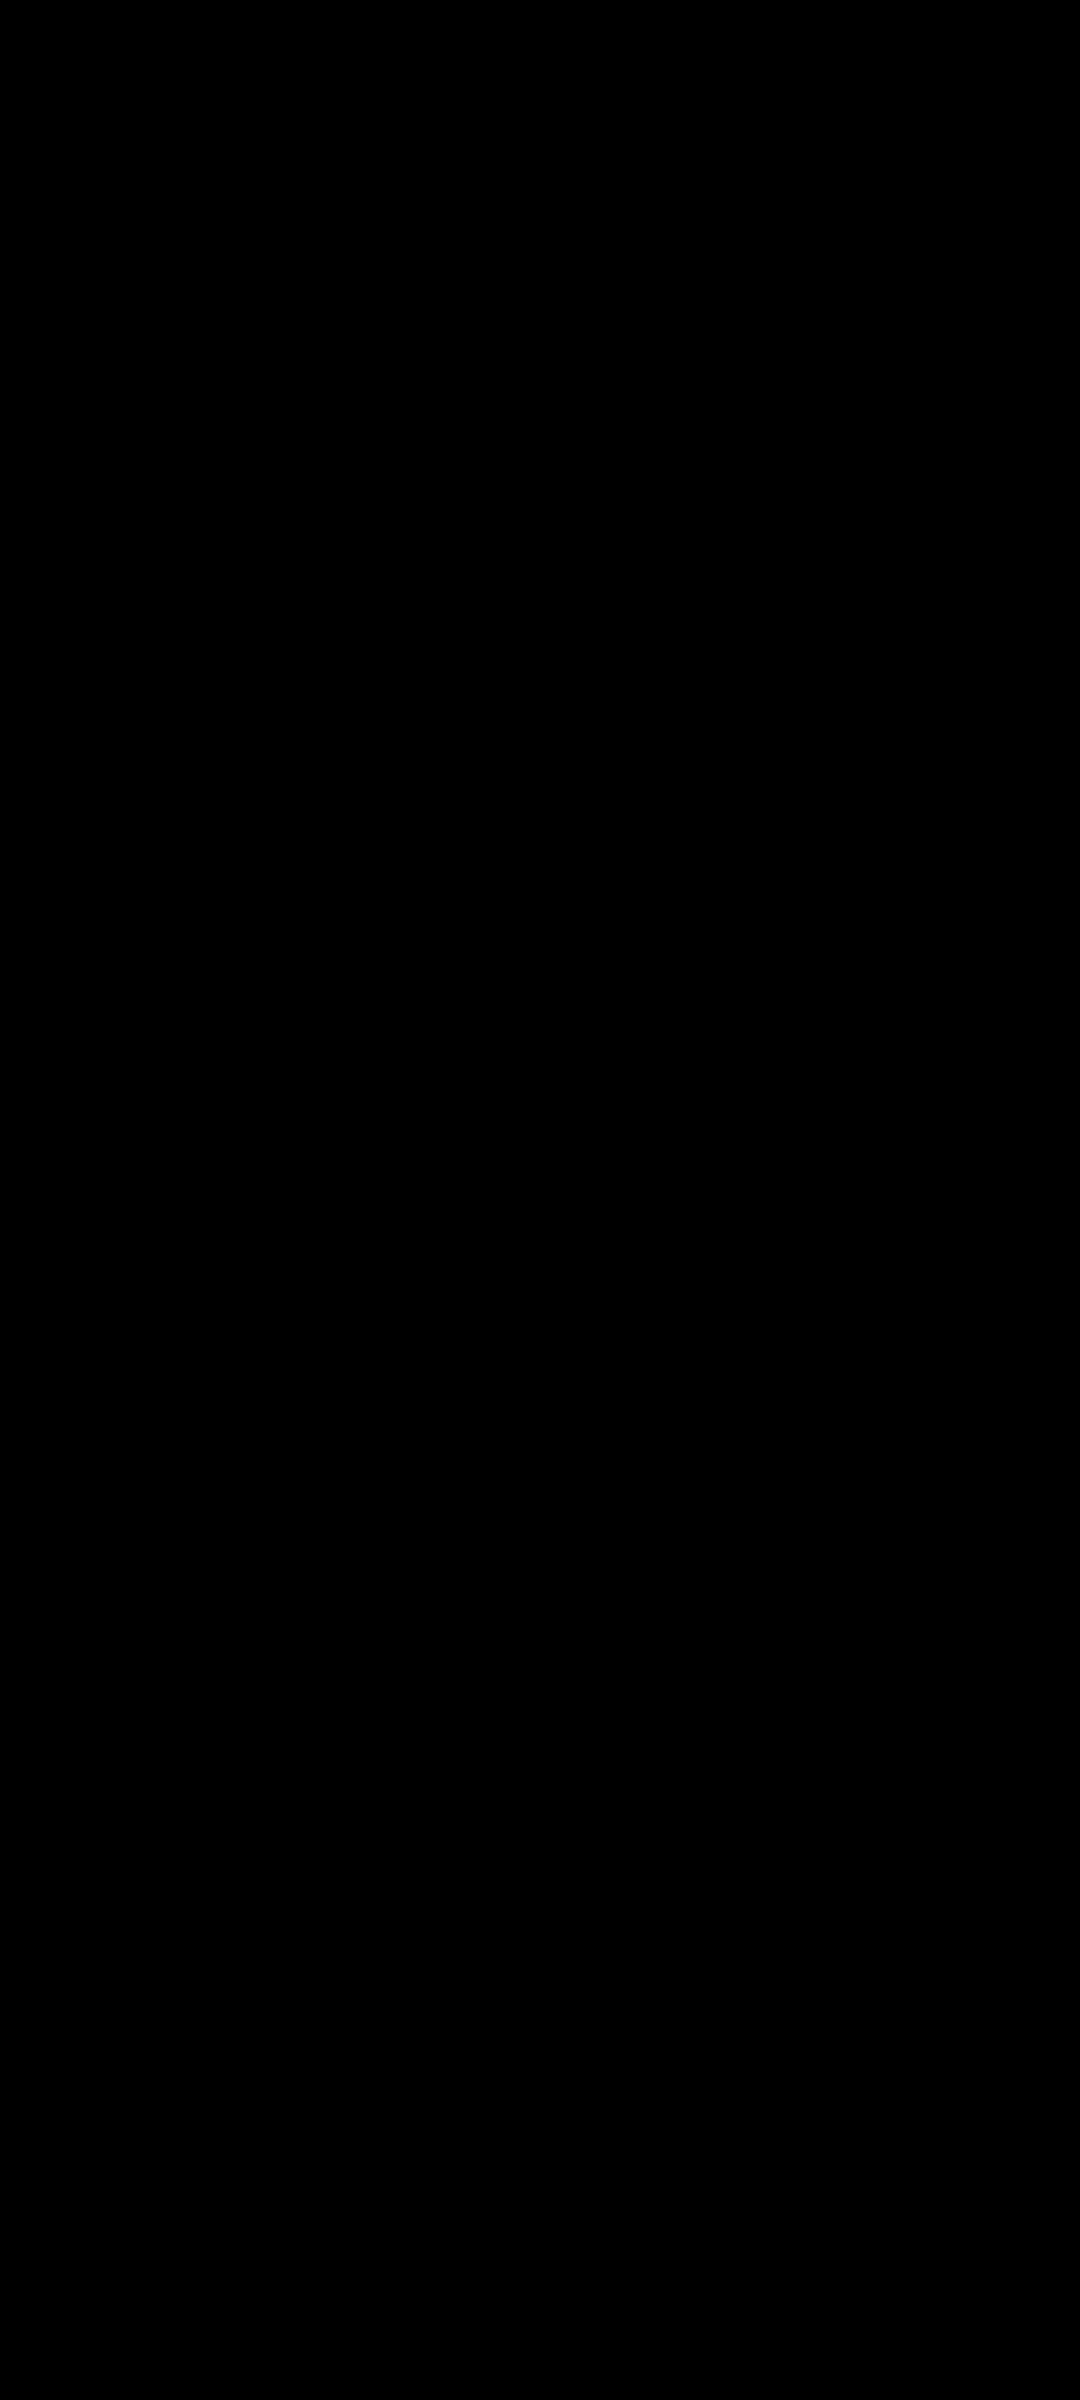 ナポリタン寿司が作成した黒の背景画像